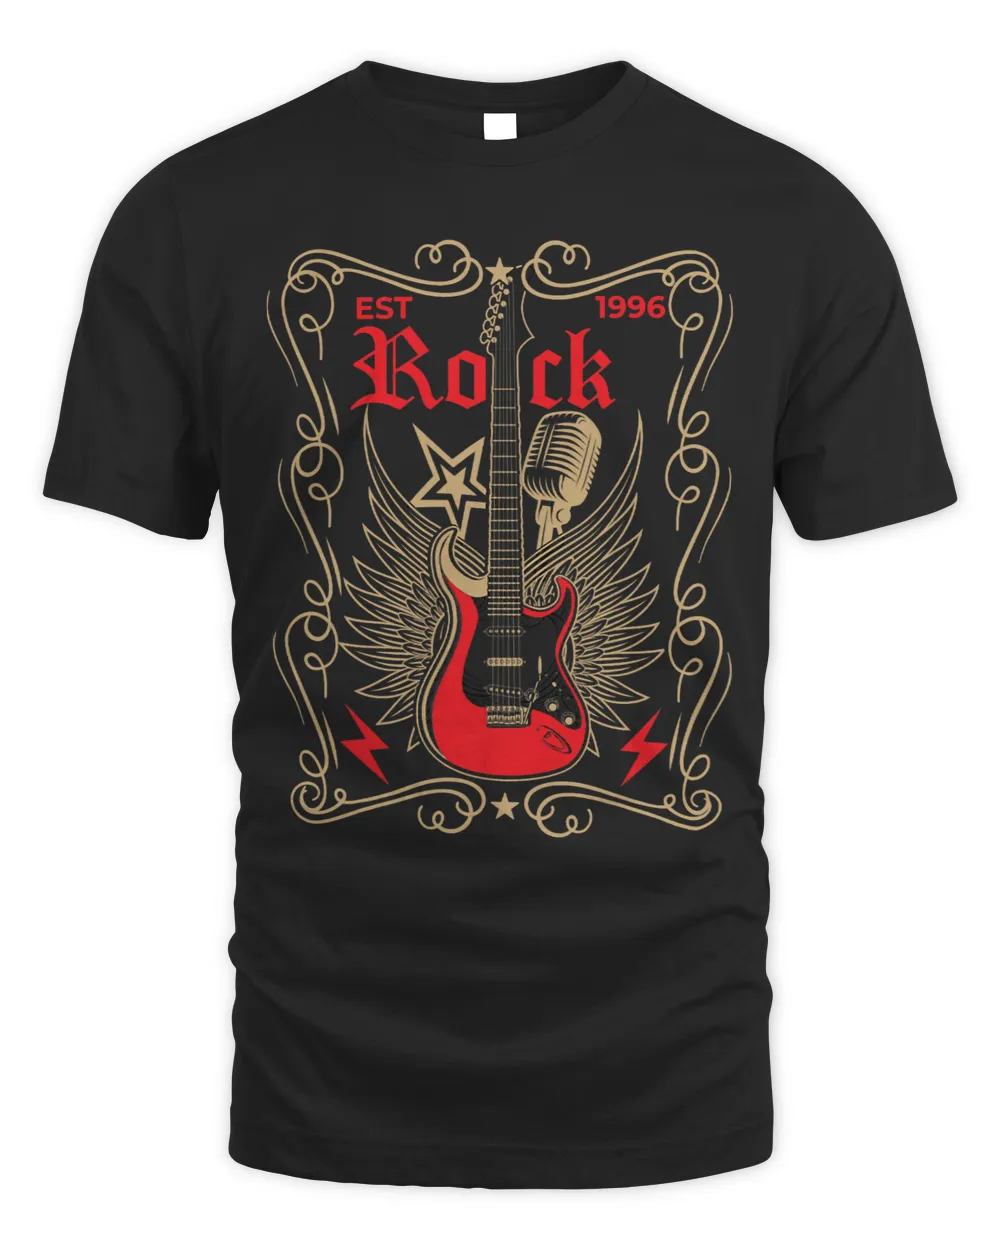 Roch and Roll Punk Rock Heavy Metal Hard Rock